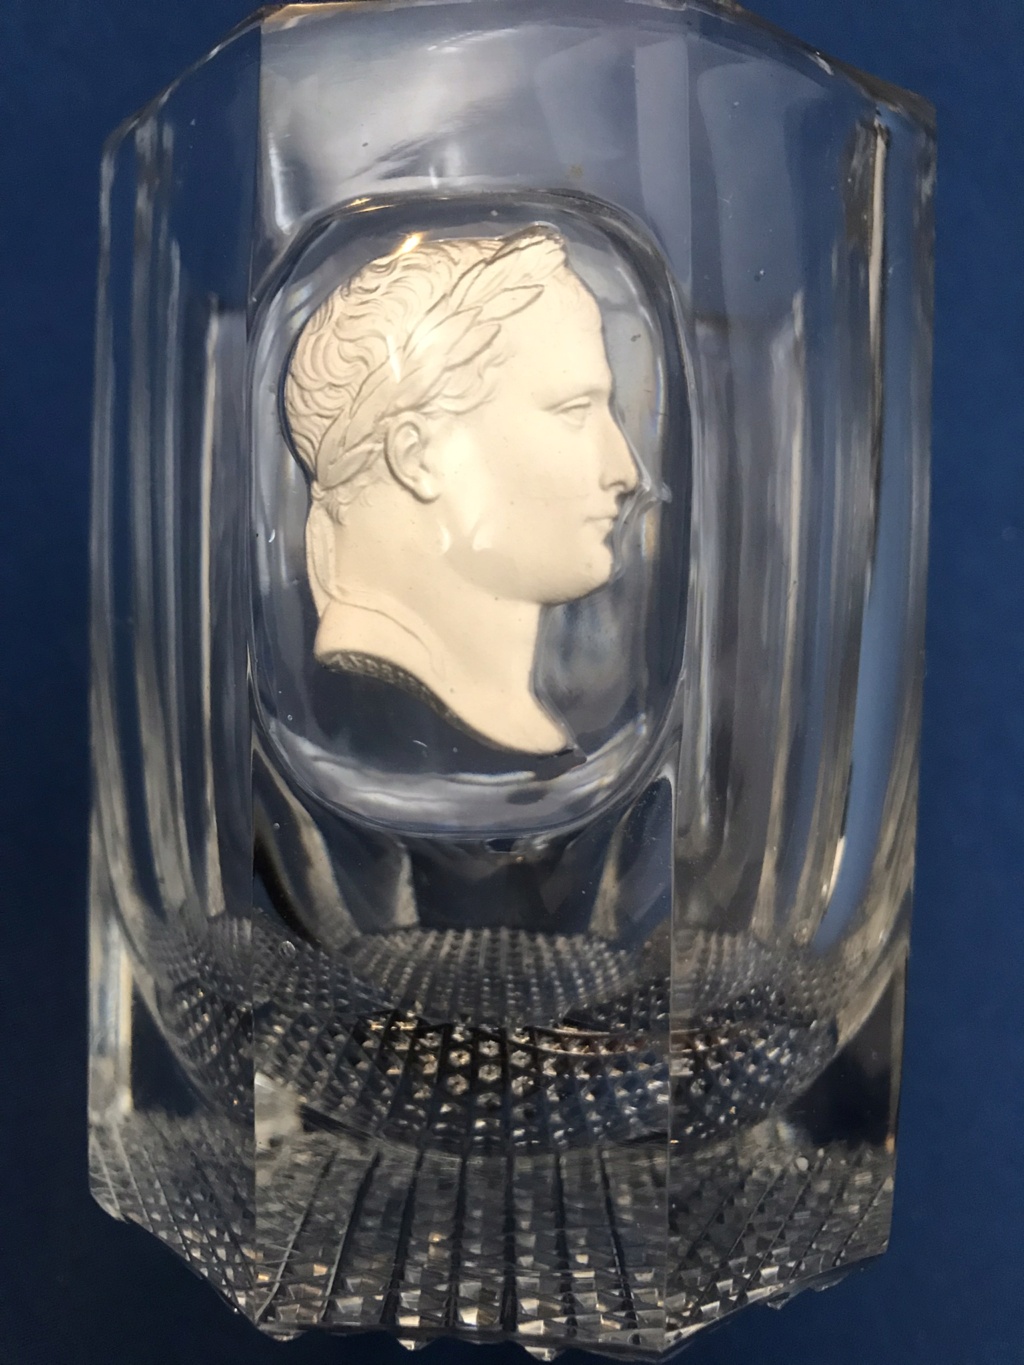 Gobelet en cristal avec profil de Napoléon : datation ? Origine ? 3d6d1410